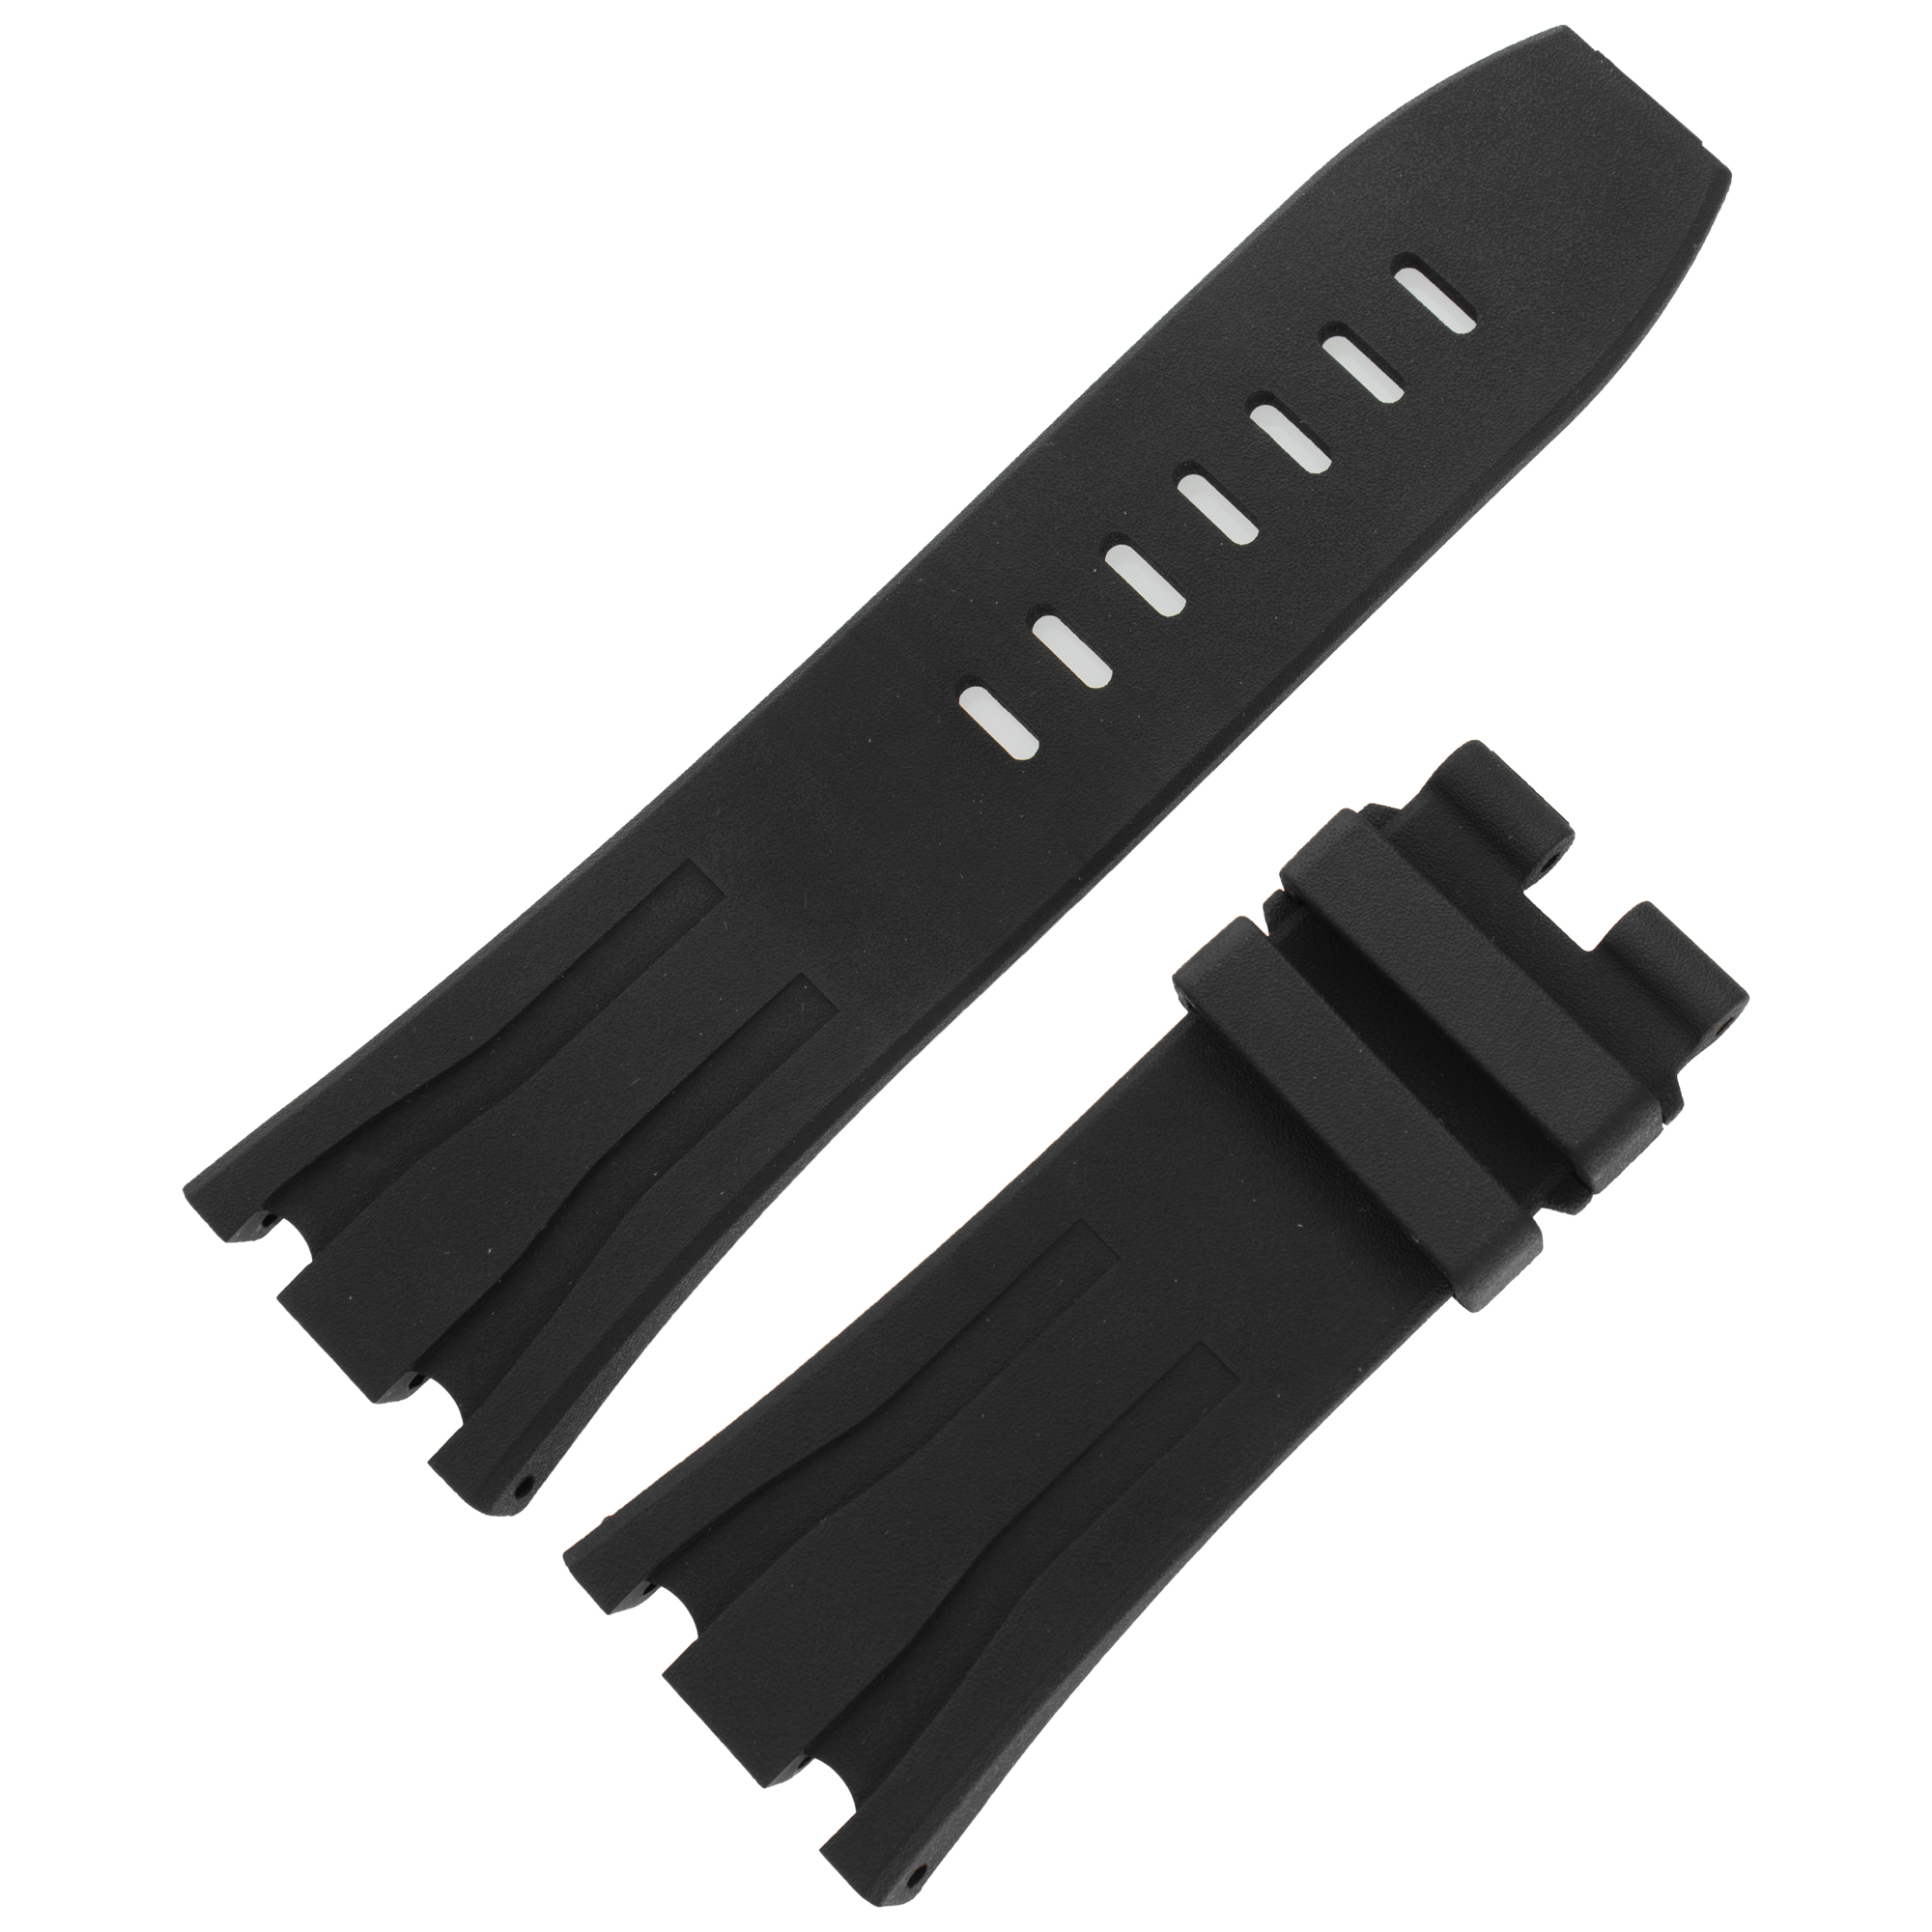 Audemars Piguet Royal Oak Offshore black rubber strap (30mm x 24mm)